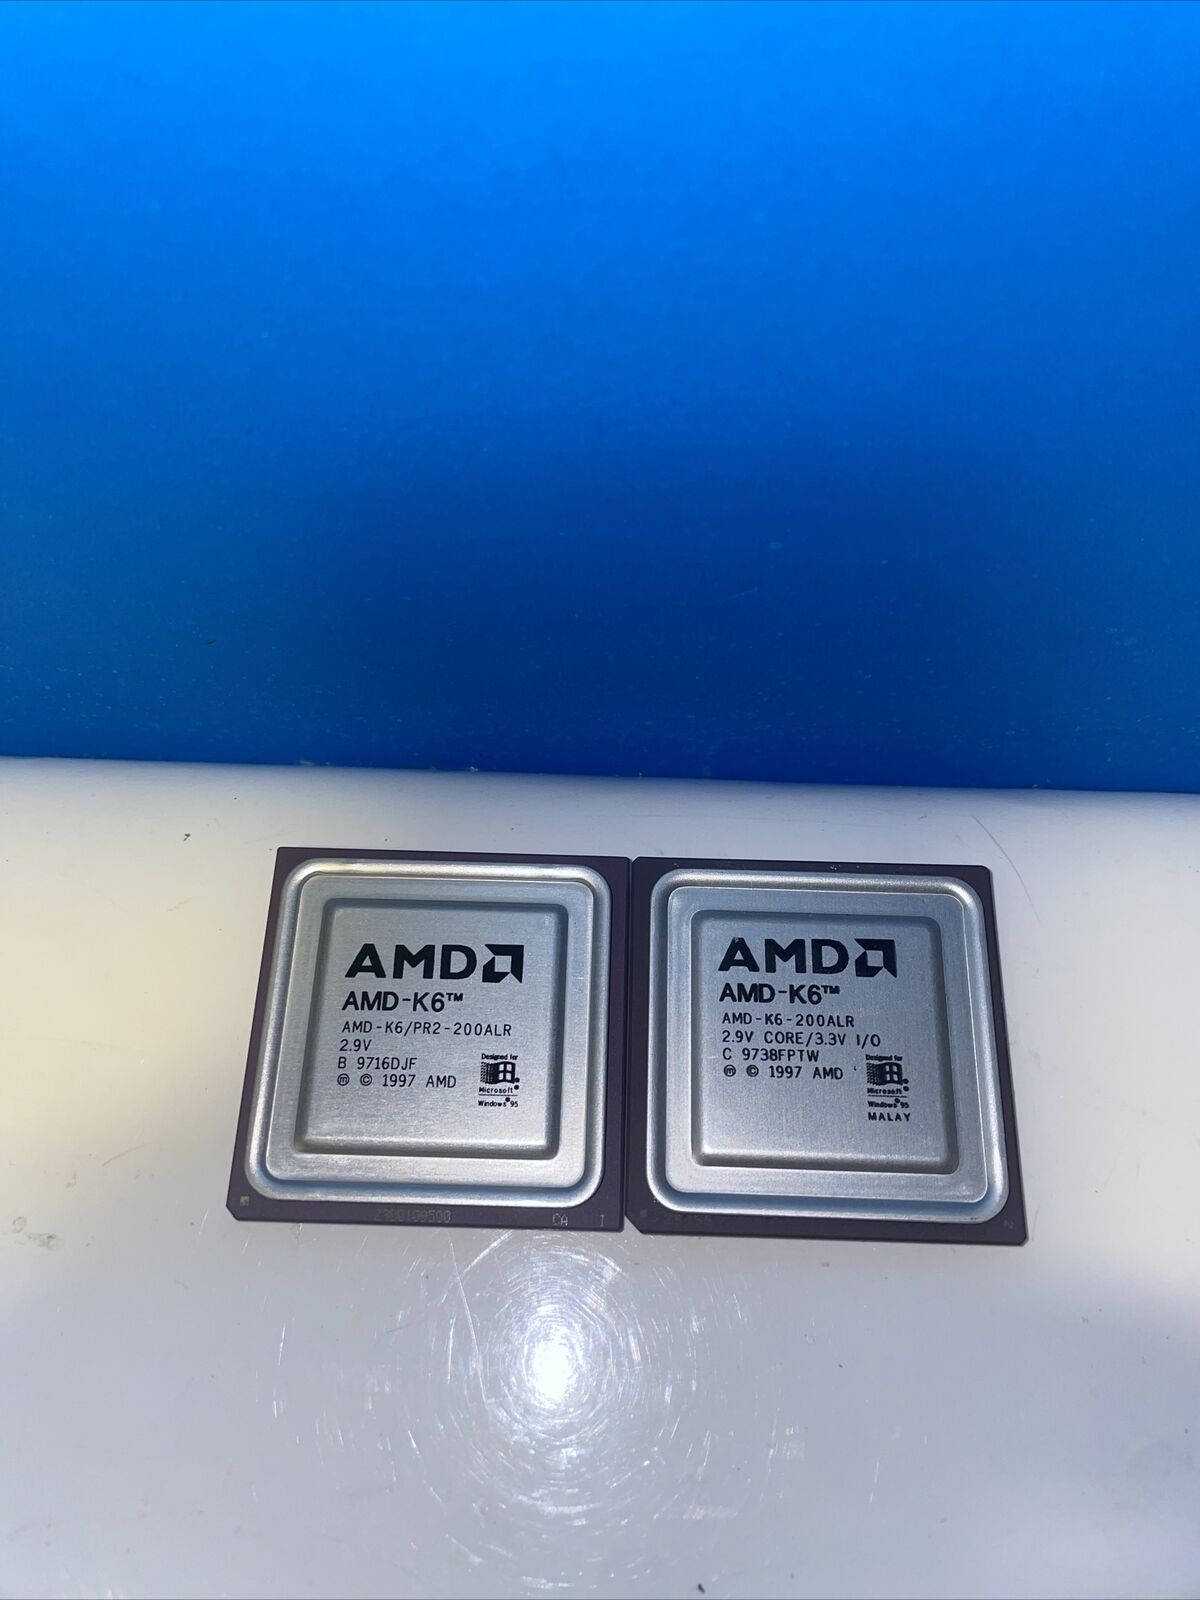 Lot of 2 AMD K6/PR2 200ALR AMD-K6-200ALR rare PR2 Vintage CPU (Grade A)